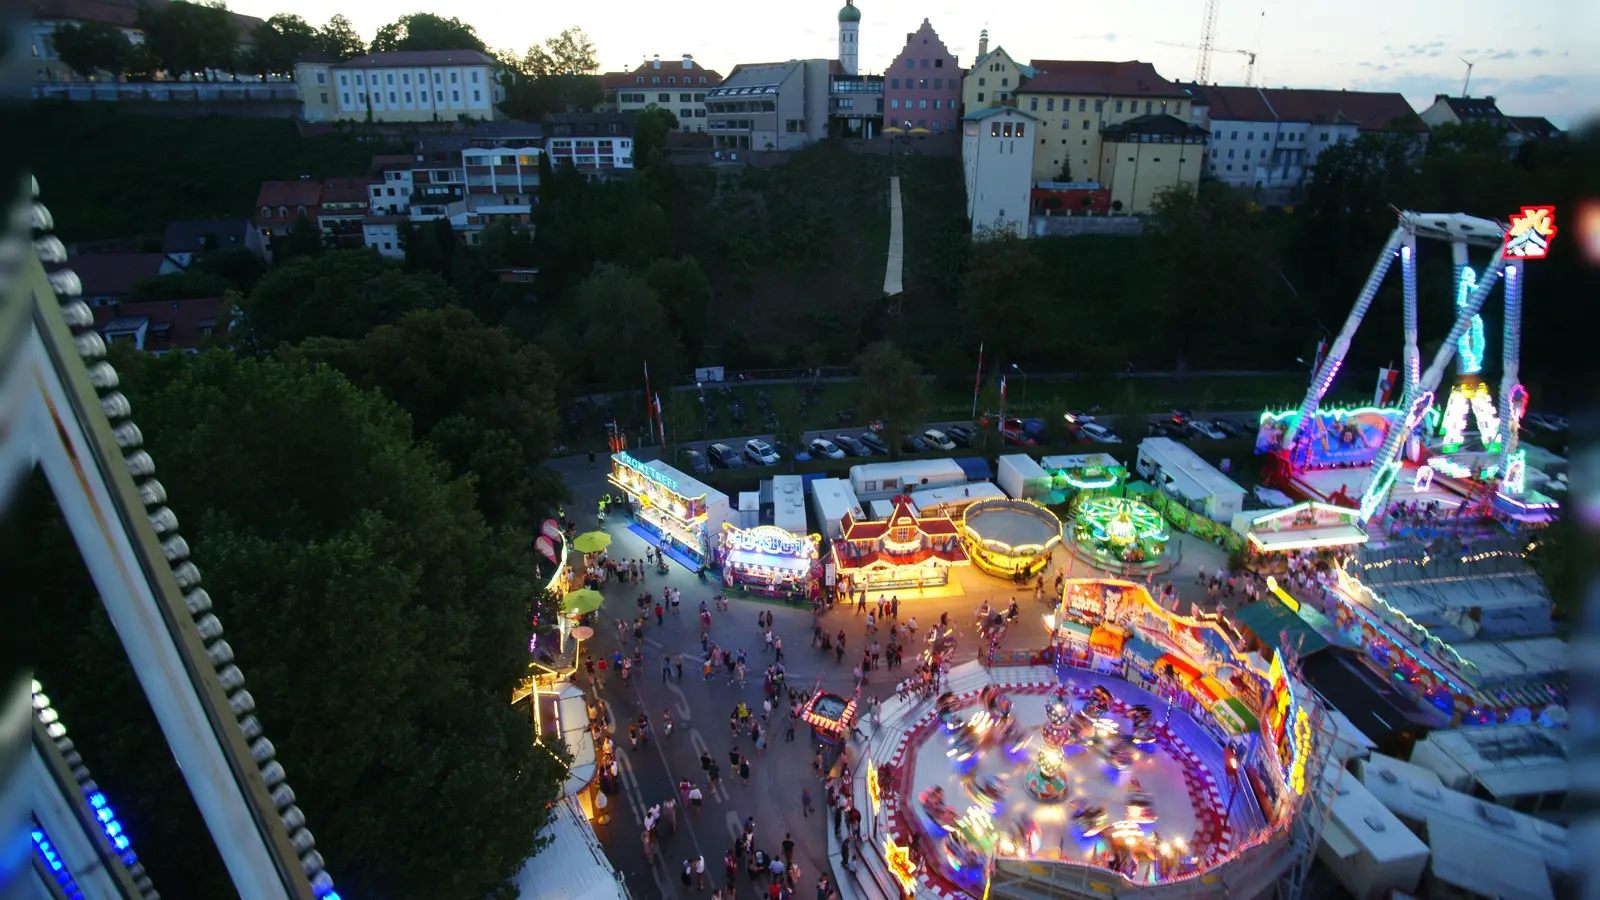 Zum Schutz der Volksfestbesucher und der umliegenden Anwohner wird auch in diesem Jahr eine gesonderte Verkehrsreglung während des Dachauer Volksfestes eingerichtet. (Foto: Sebastian Leiß)